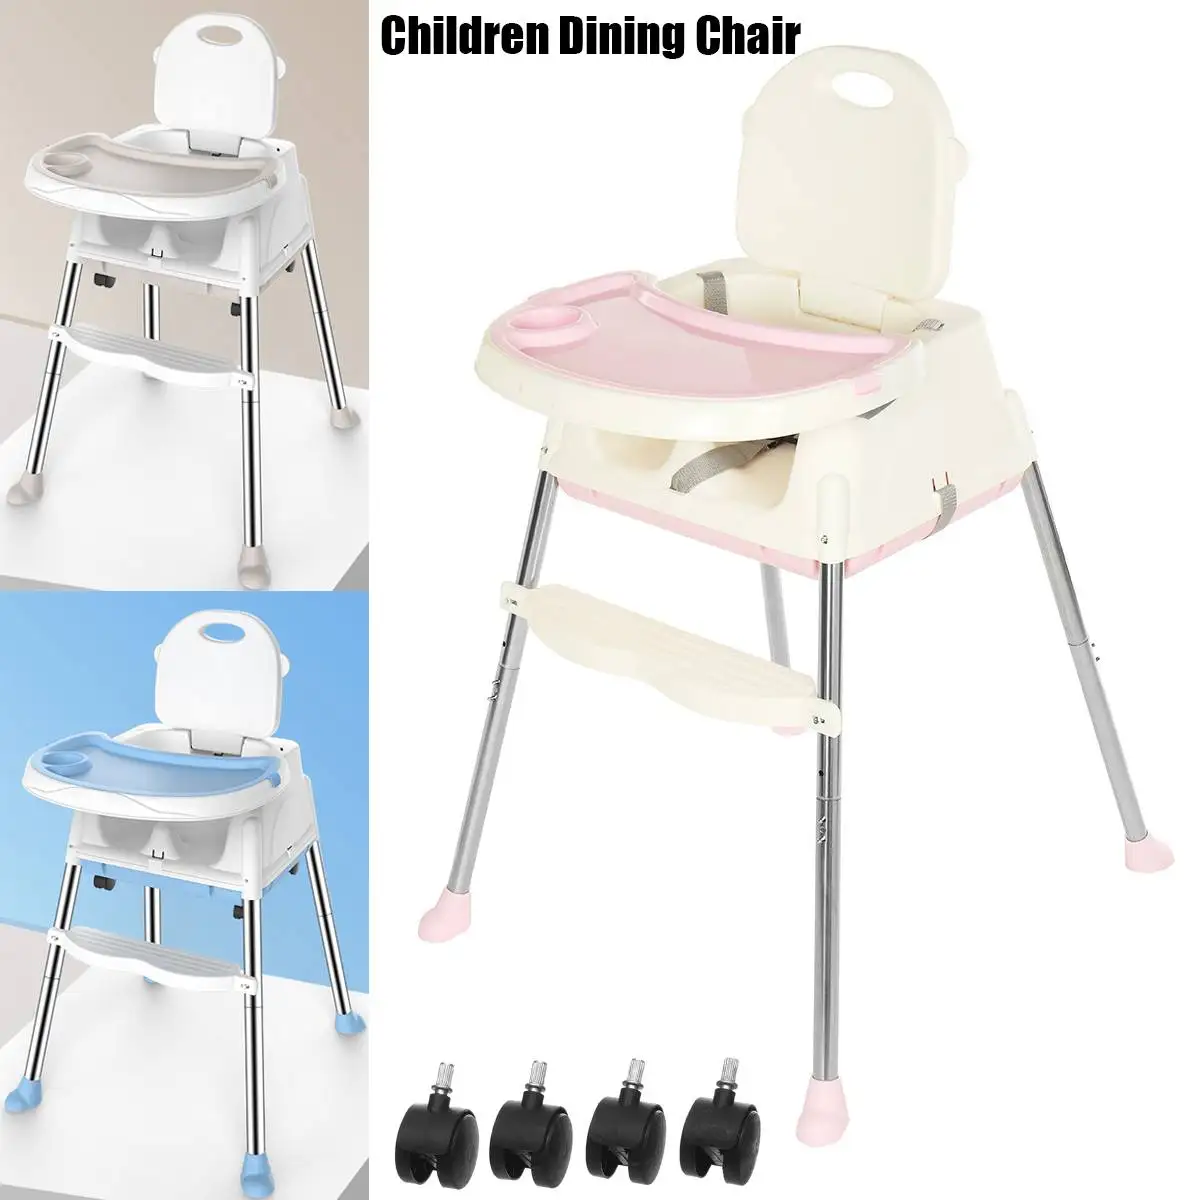 

Детские стульчики, детский обеденный стол, стул, высокий стул для детей, для кормления мальчиков и девочек, для детского стола, для новорожде...